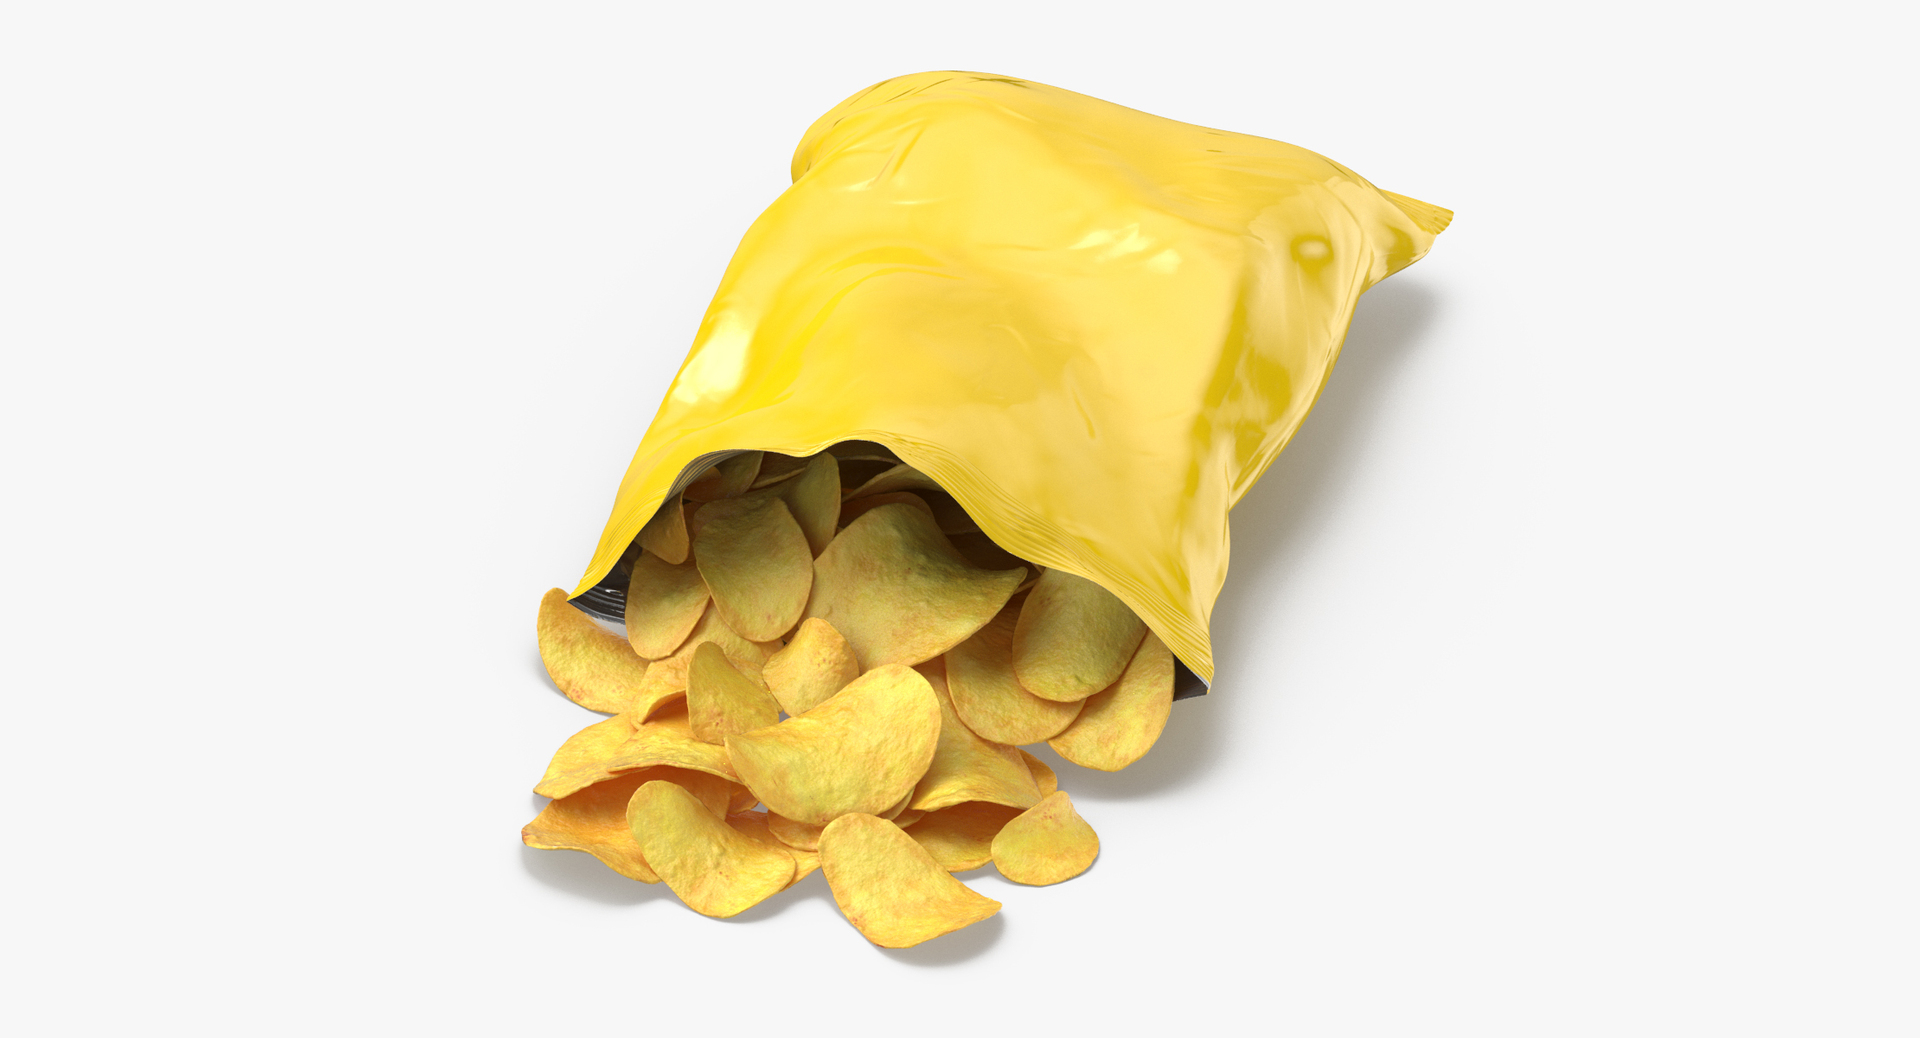 Balenciaga's Lays Potato Chip Bag, Courtesy of AliExpress